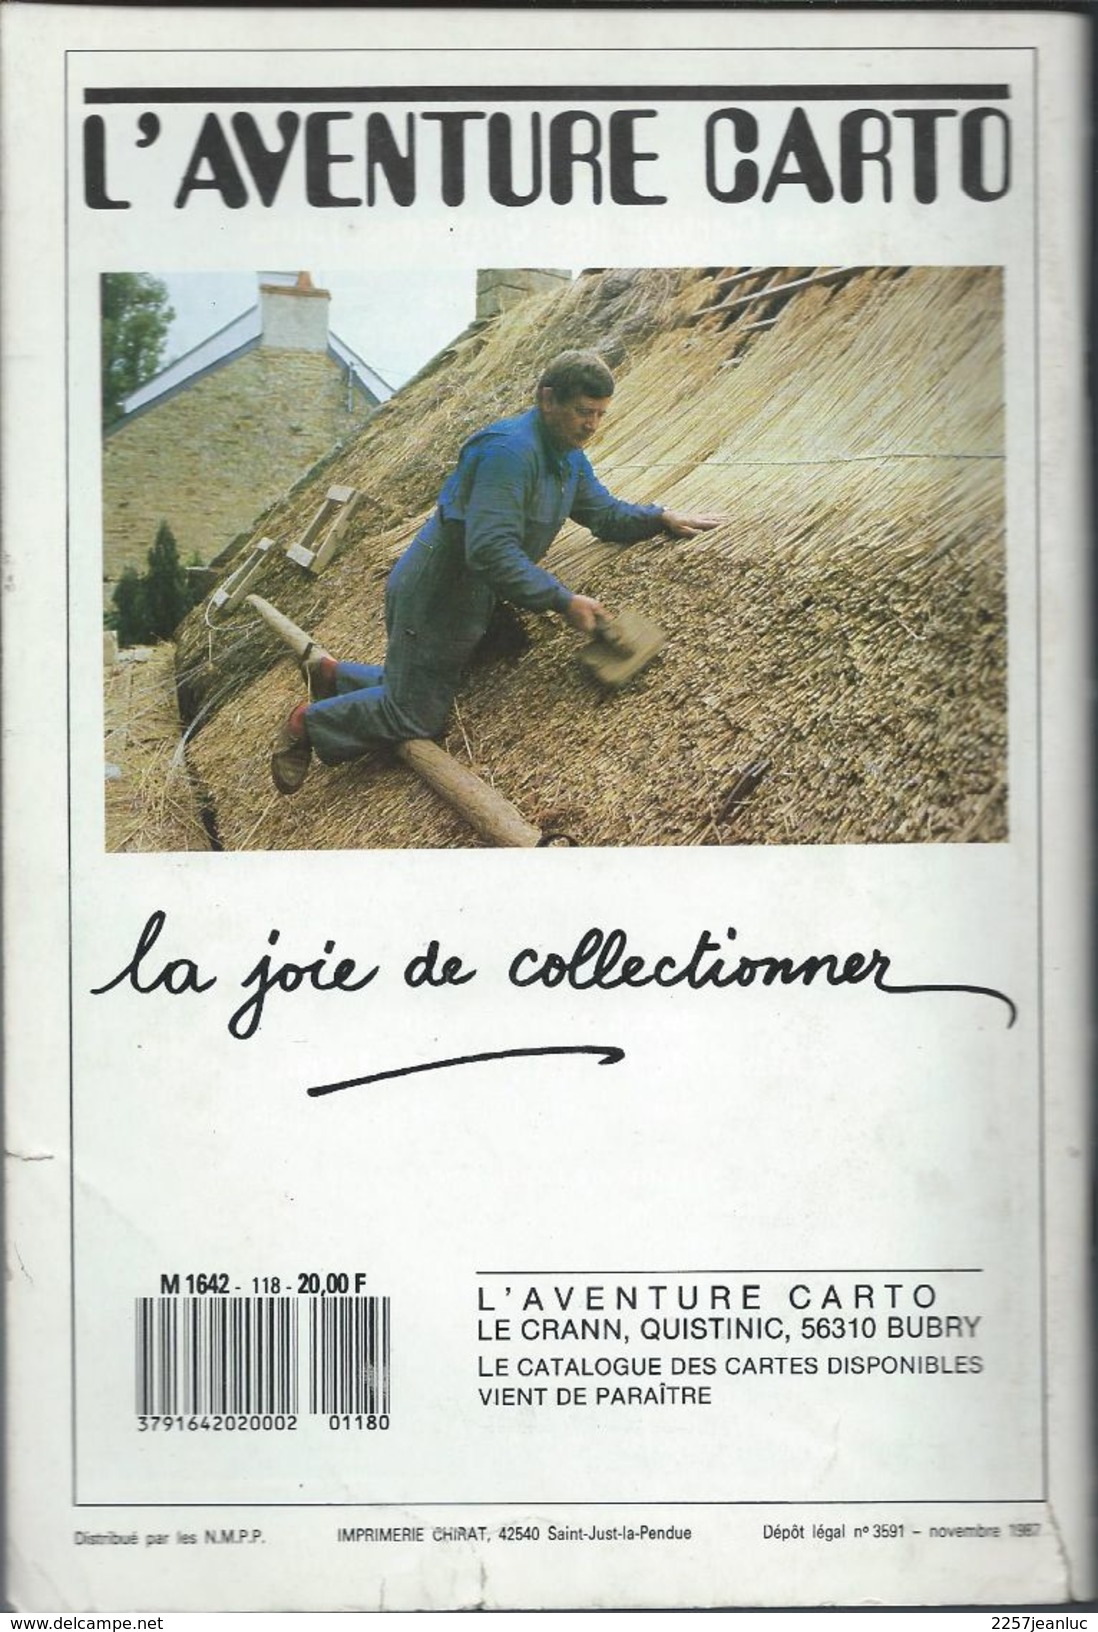 Cartes Postales Et Collections Avril 1988  Magazines N: 120 Llustration &  Thèmes Divers 120 Pages - Francés